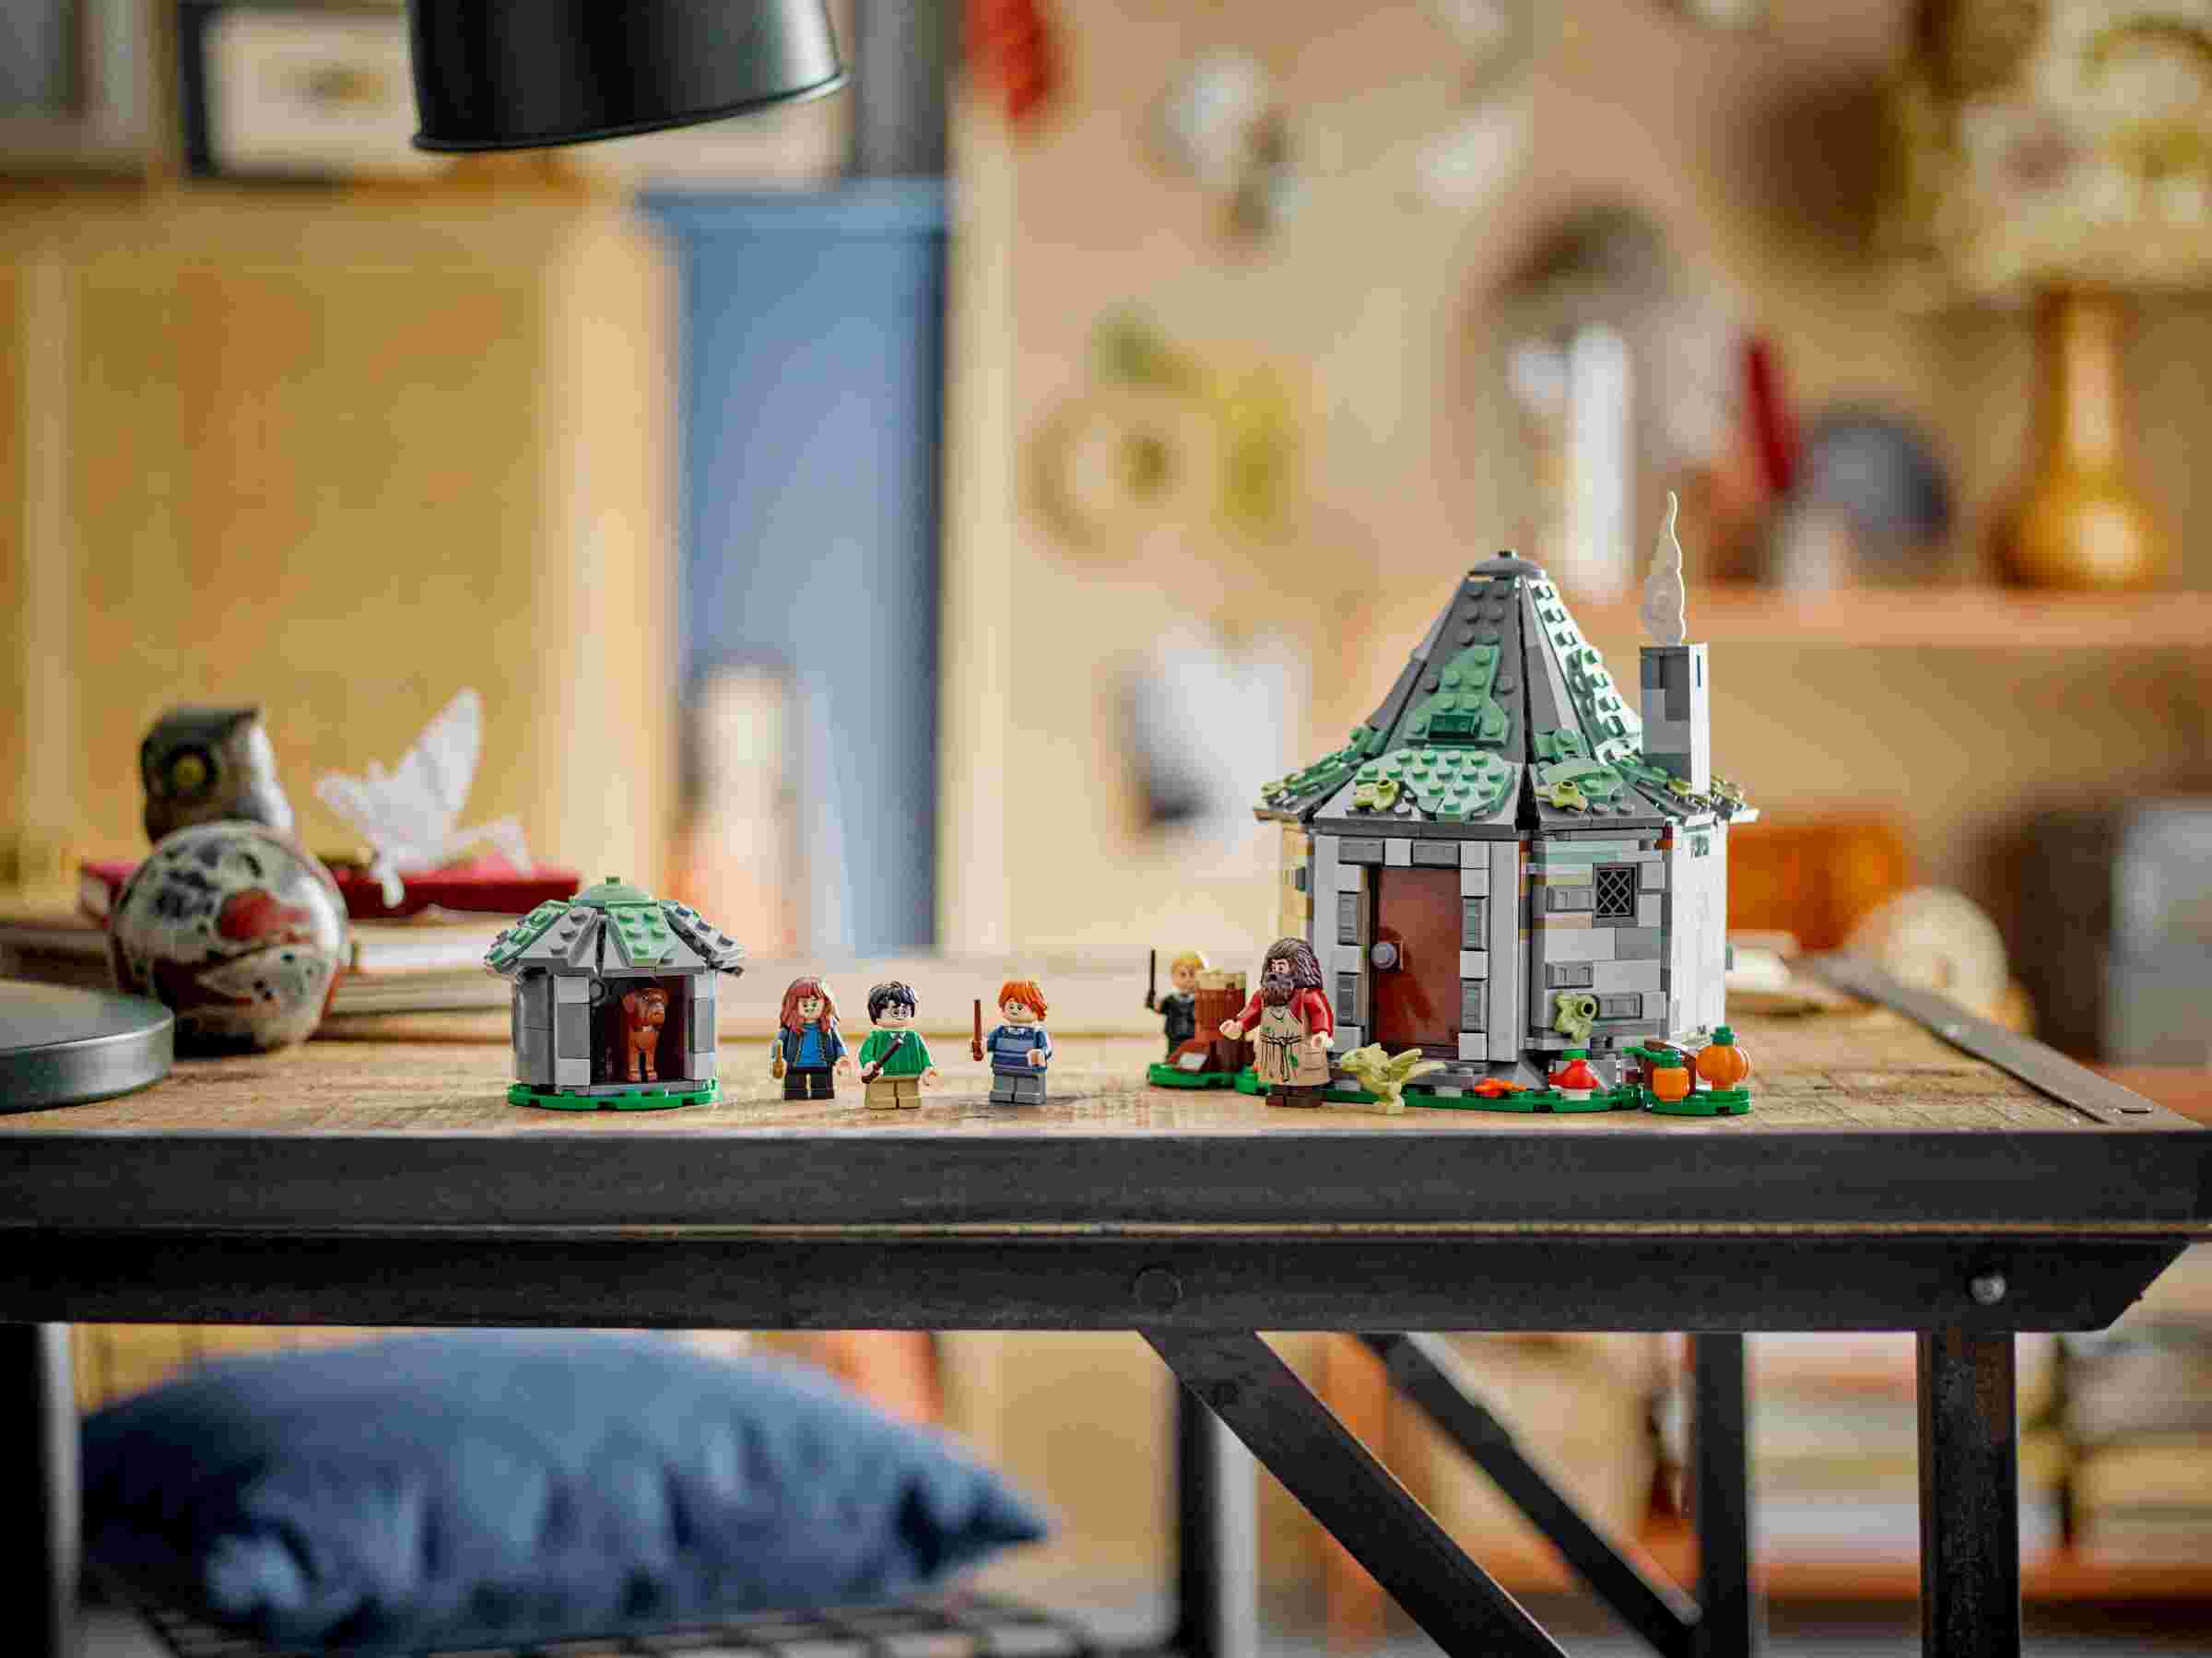 LEGO 76428 Harry Potter Hagrids Hütte: Ein unerwarteter Besuch, 7 Charaktere